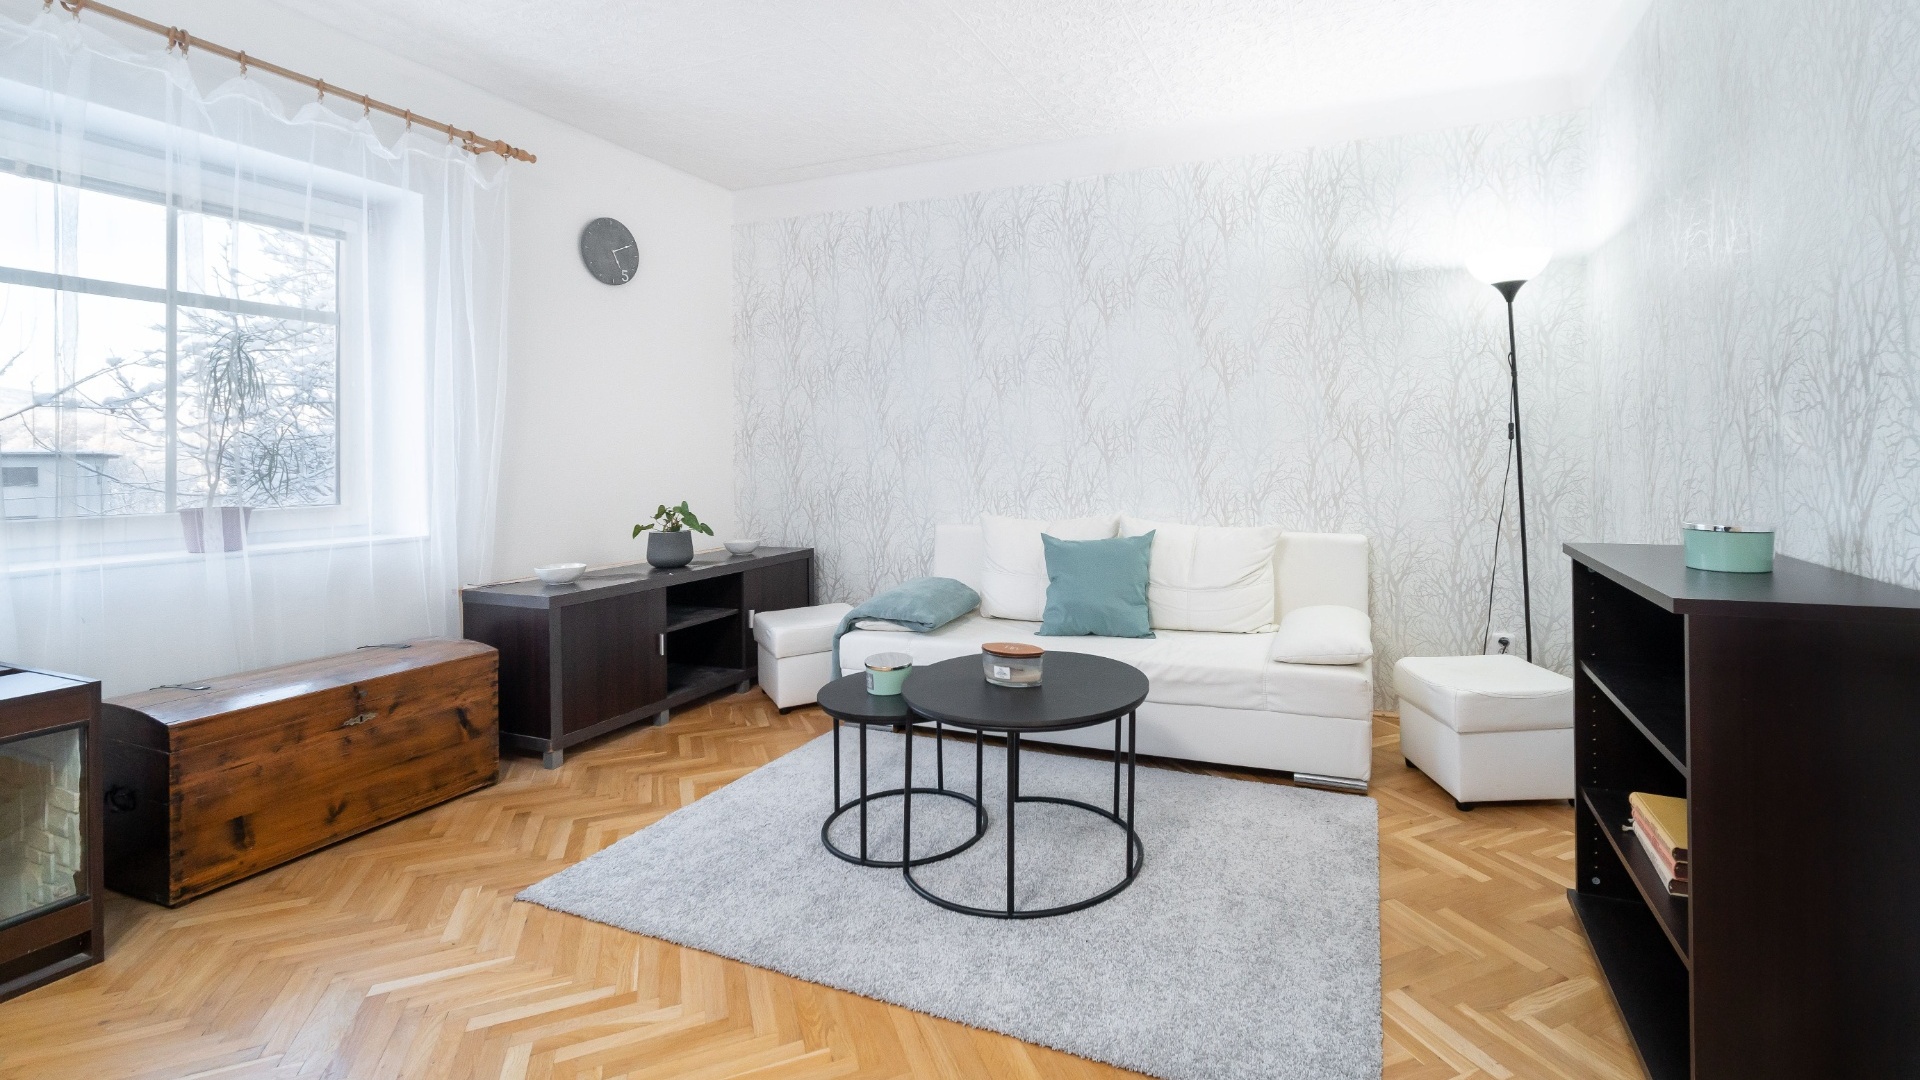 Prodej německé vily 225 m² s garáží, Liberec - Nová Ruda